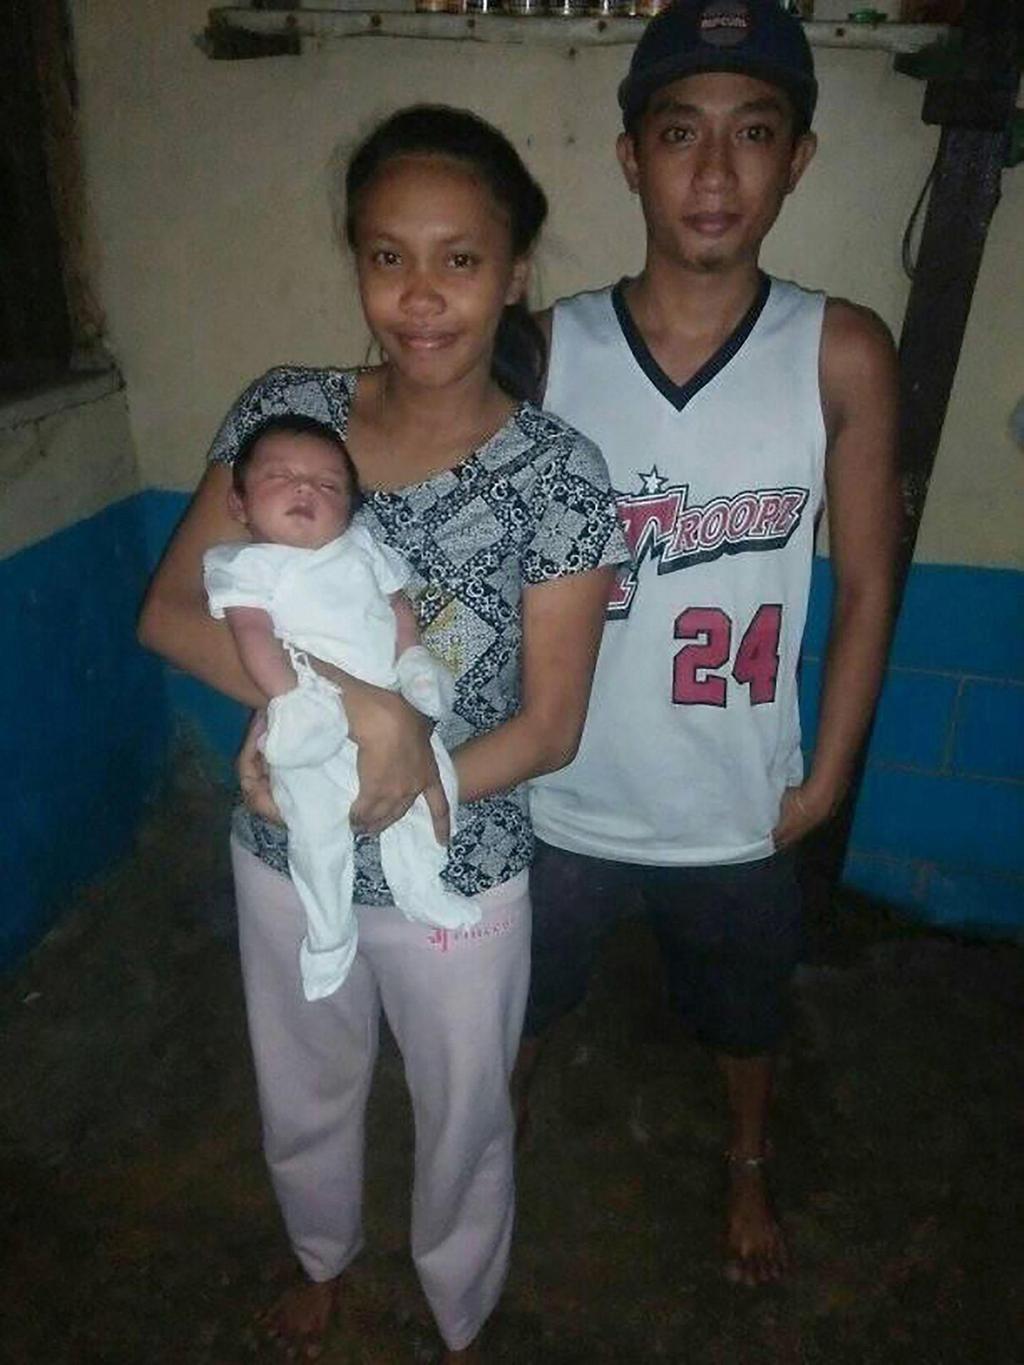 נגיף קורונה הורים קוראים לילדים על שם הנגיף התינוקת קוביד מארי והוריה הפיליפינים